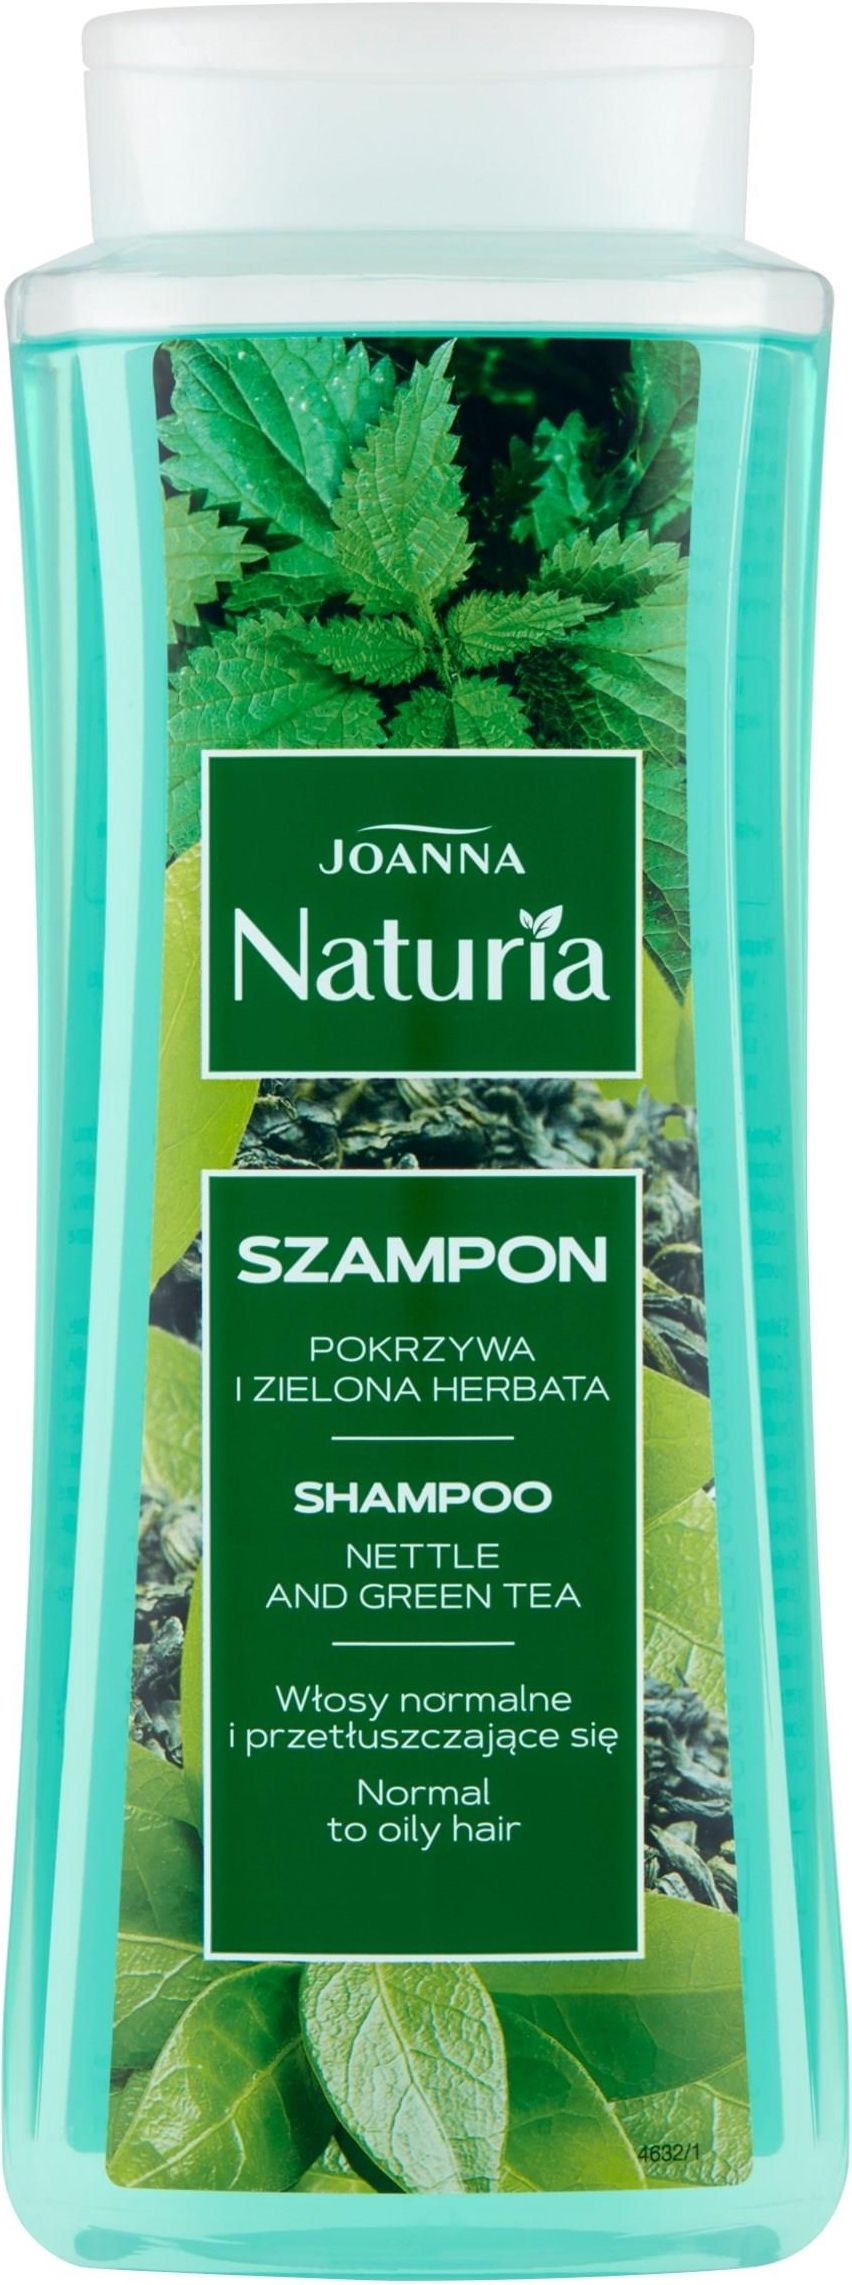 szampon joanna z zieloną herbatą